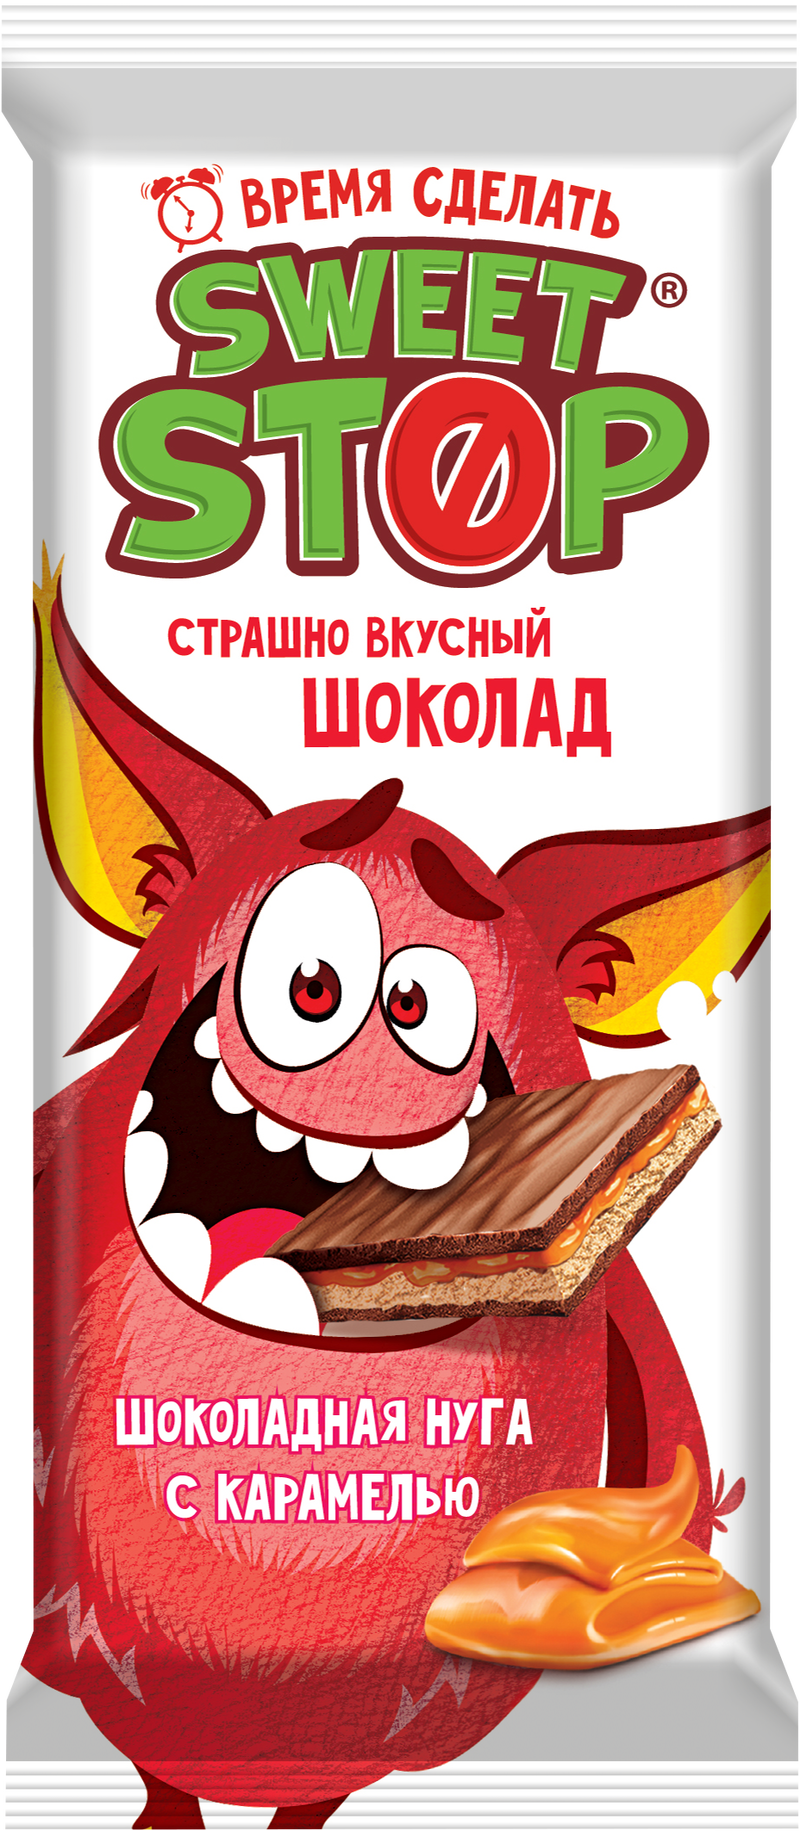  Шоколад молочный Sweet stop шоколадная нуга и карамель 90г/Славянка